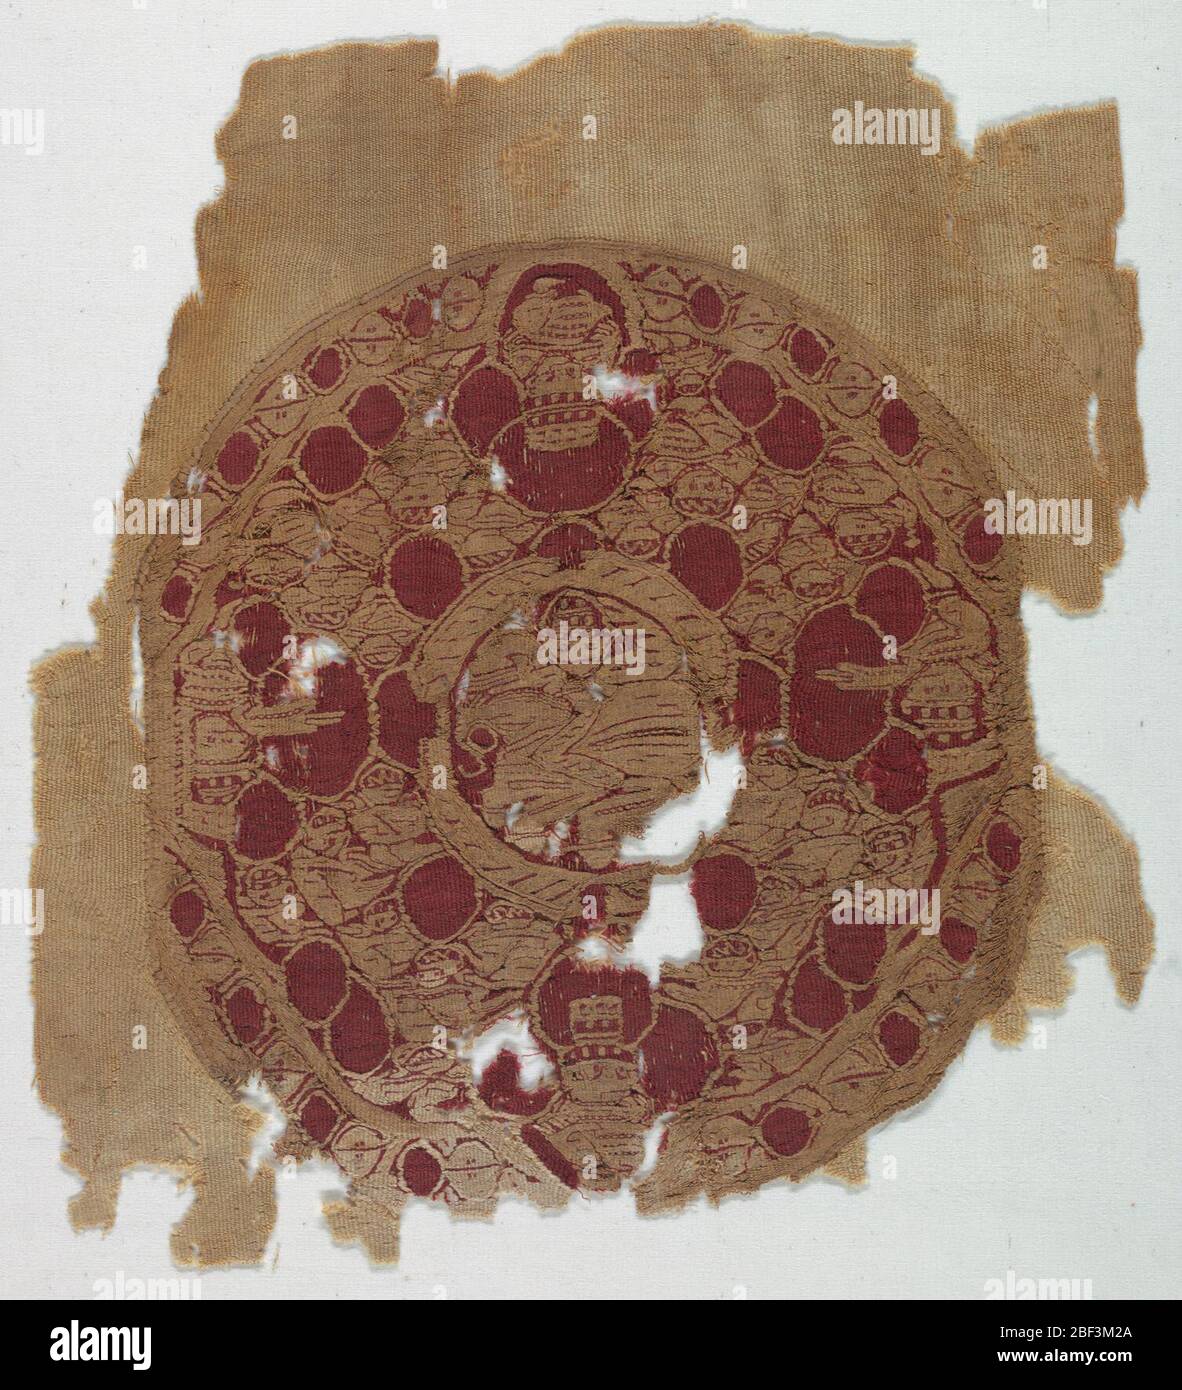 Textil. Medallón circular tejido con tapices en marfil y lana roja en las cetas de un tejido de lana de marfil de tejido liso con cara de trama. Foto de stock